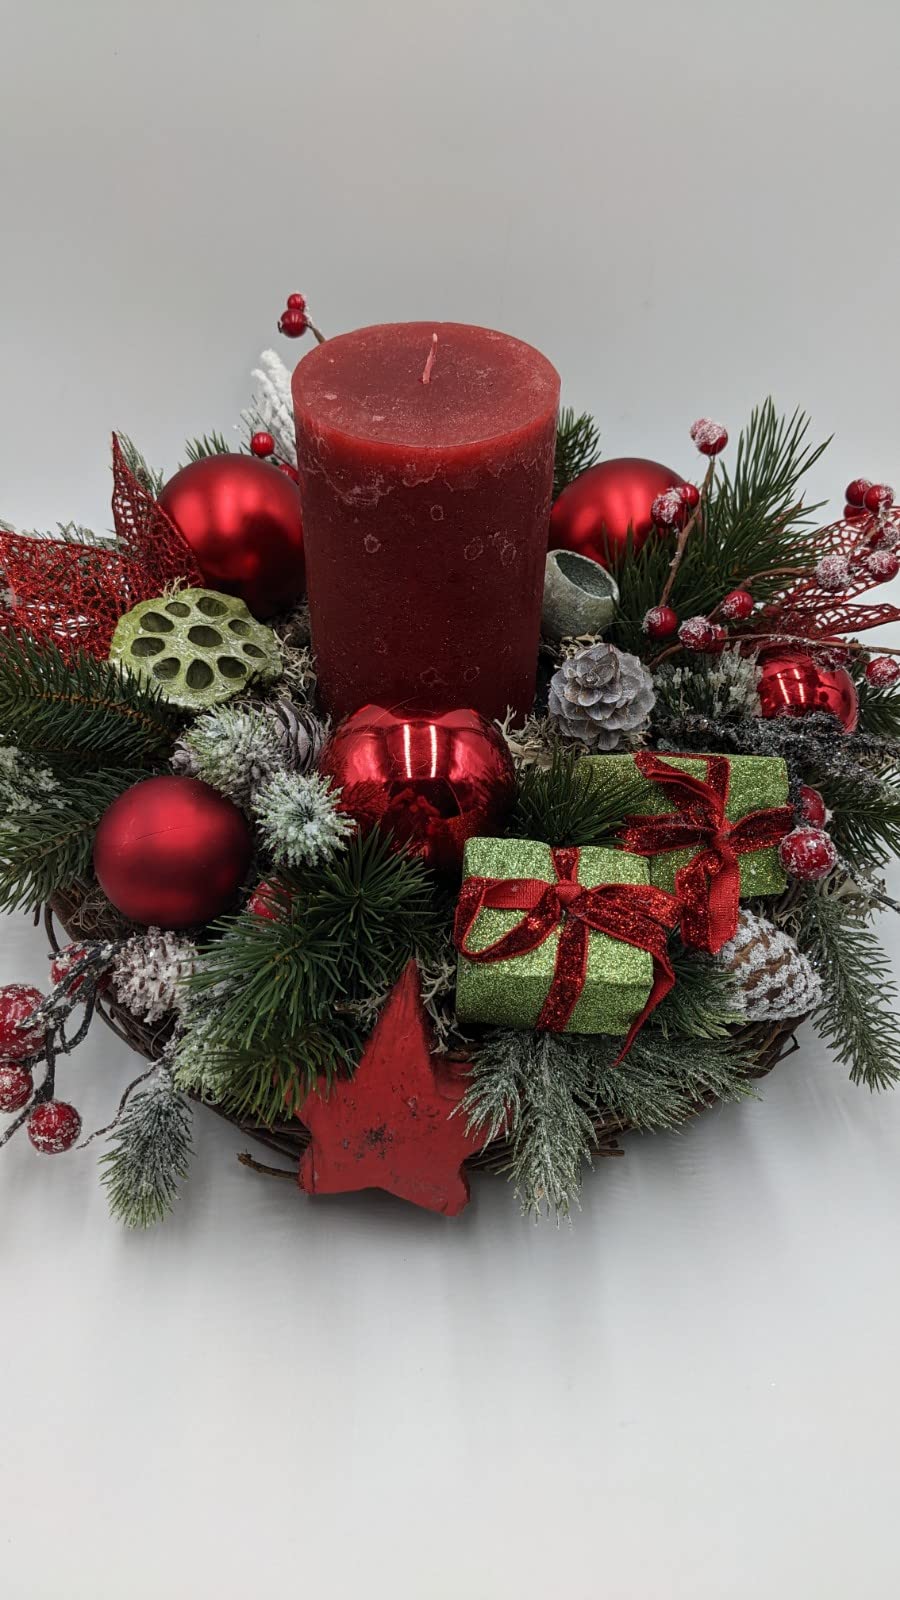 Weihnachtsgesteck Adventskranz Adventsgesteck Kugel Stern Zapfen Geschenk Kerze Kirsche Beeren Tanne rot grün